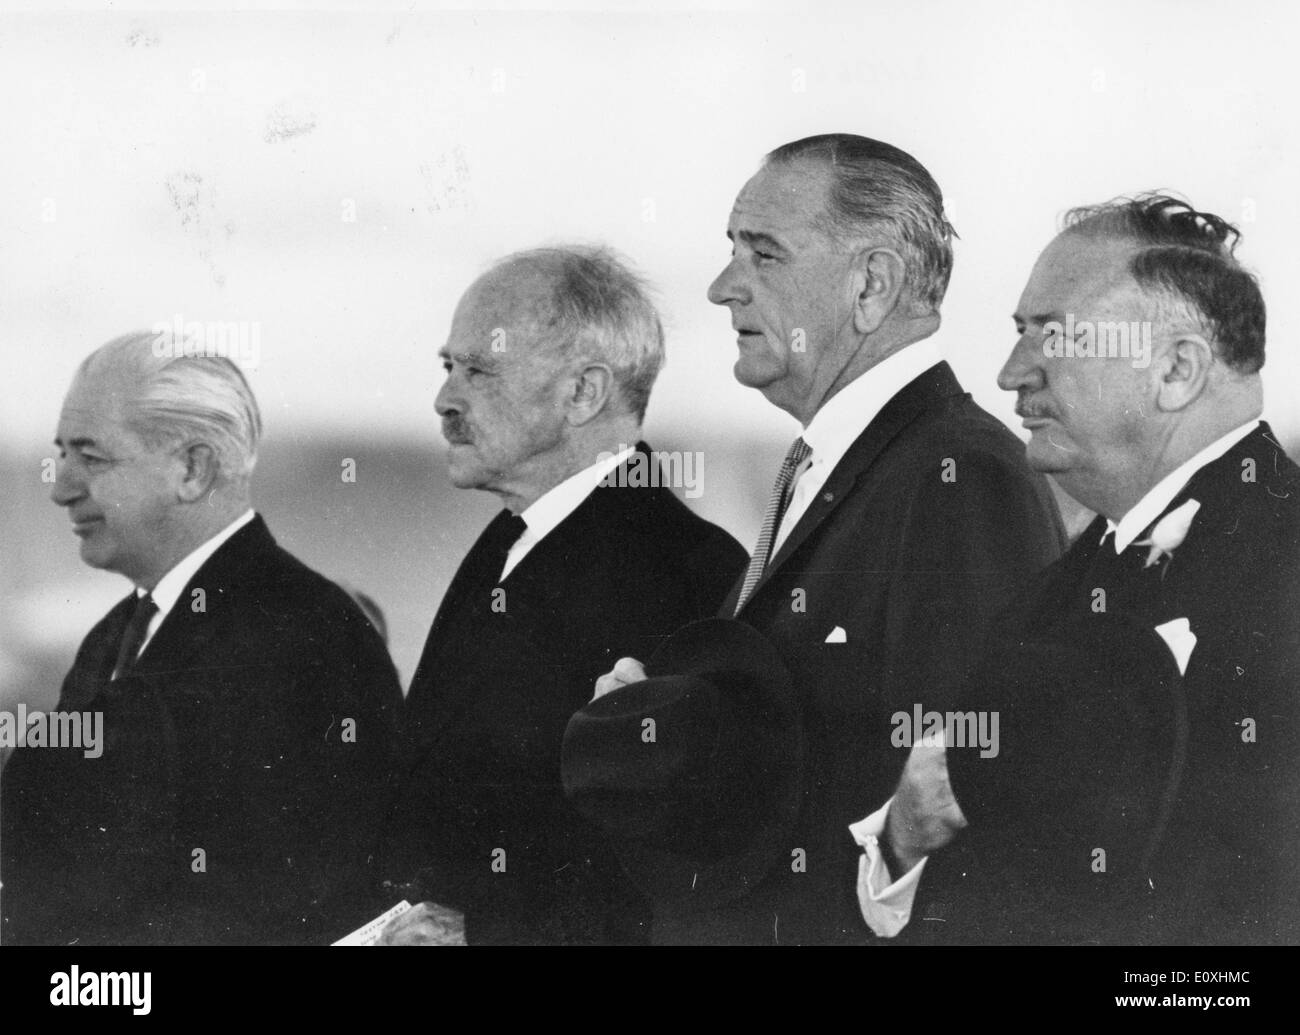 25 octobre 1966 - Canberra, District de Columbia, de l'Australie - Lyndon Baines Johnson (Août 27, 1908 - janvier 22, 1973) souvent appelée LBJ, était le 36e président des États-Unis (1963-1969) après son service comme la 37e Vice-président des États-Unis (1961-1963). Sur la photo : avec Austraiian PM HOLT. Banque D'Images